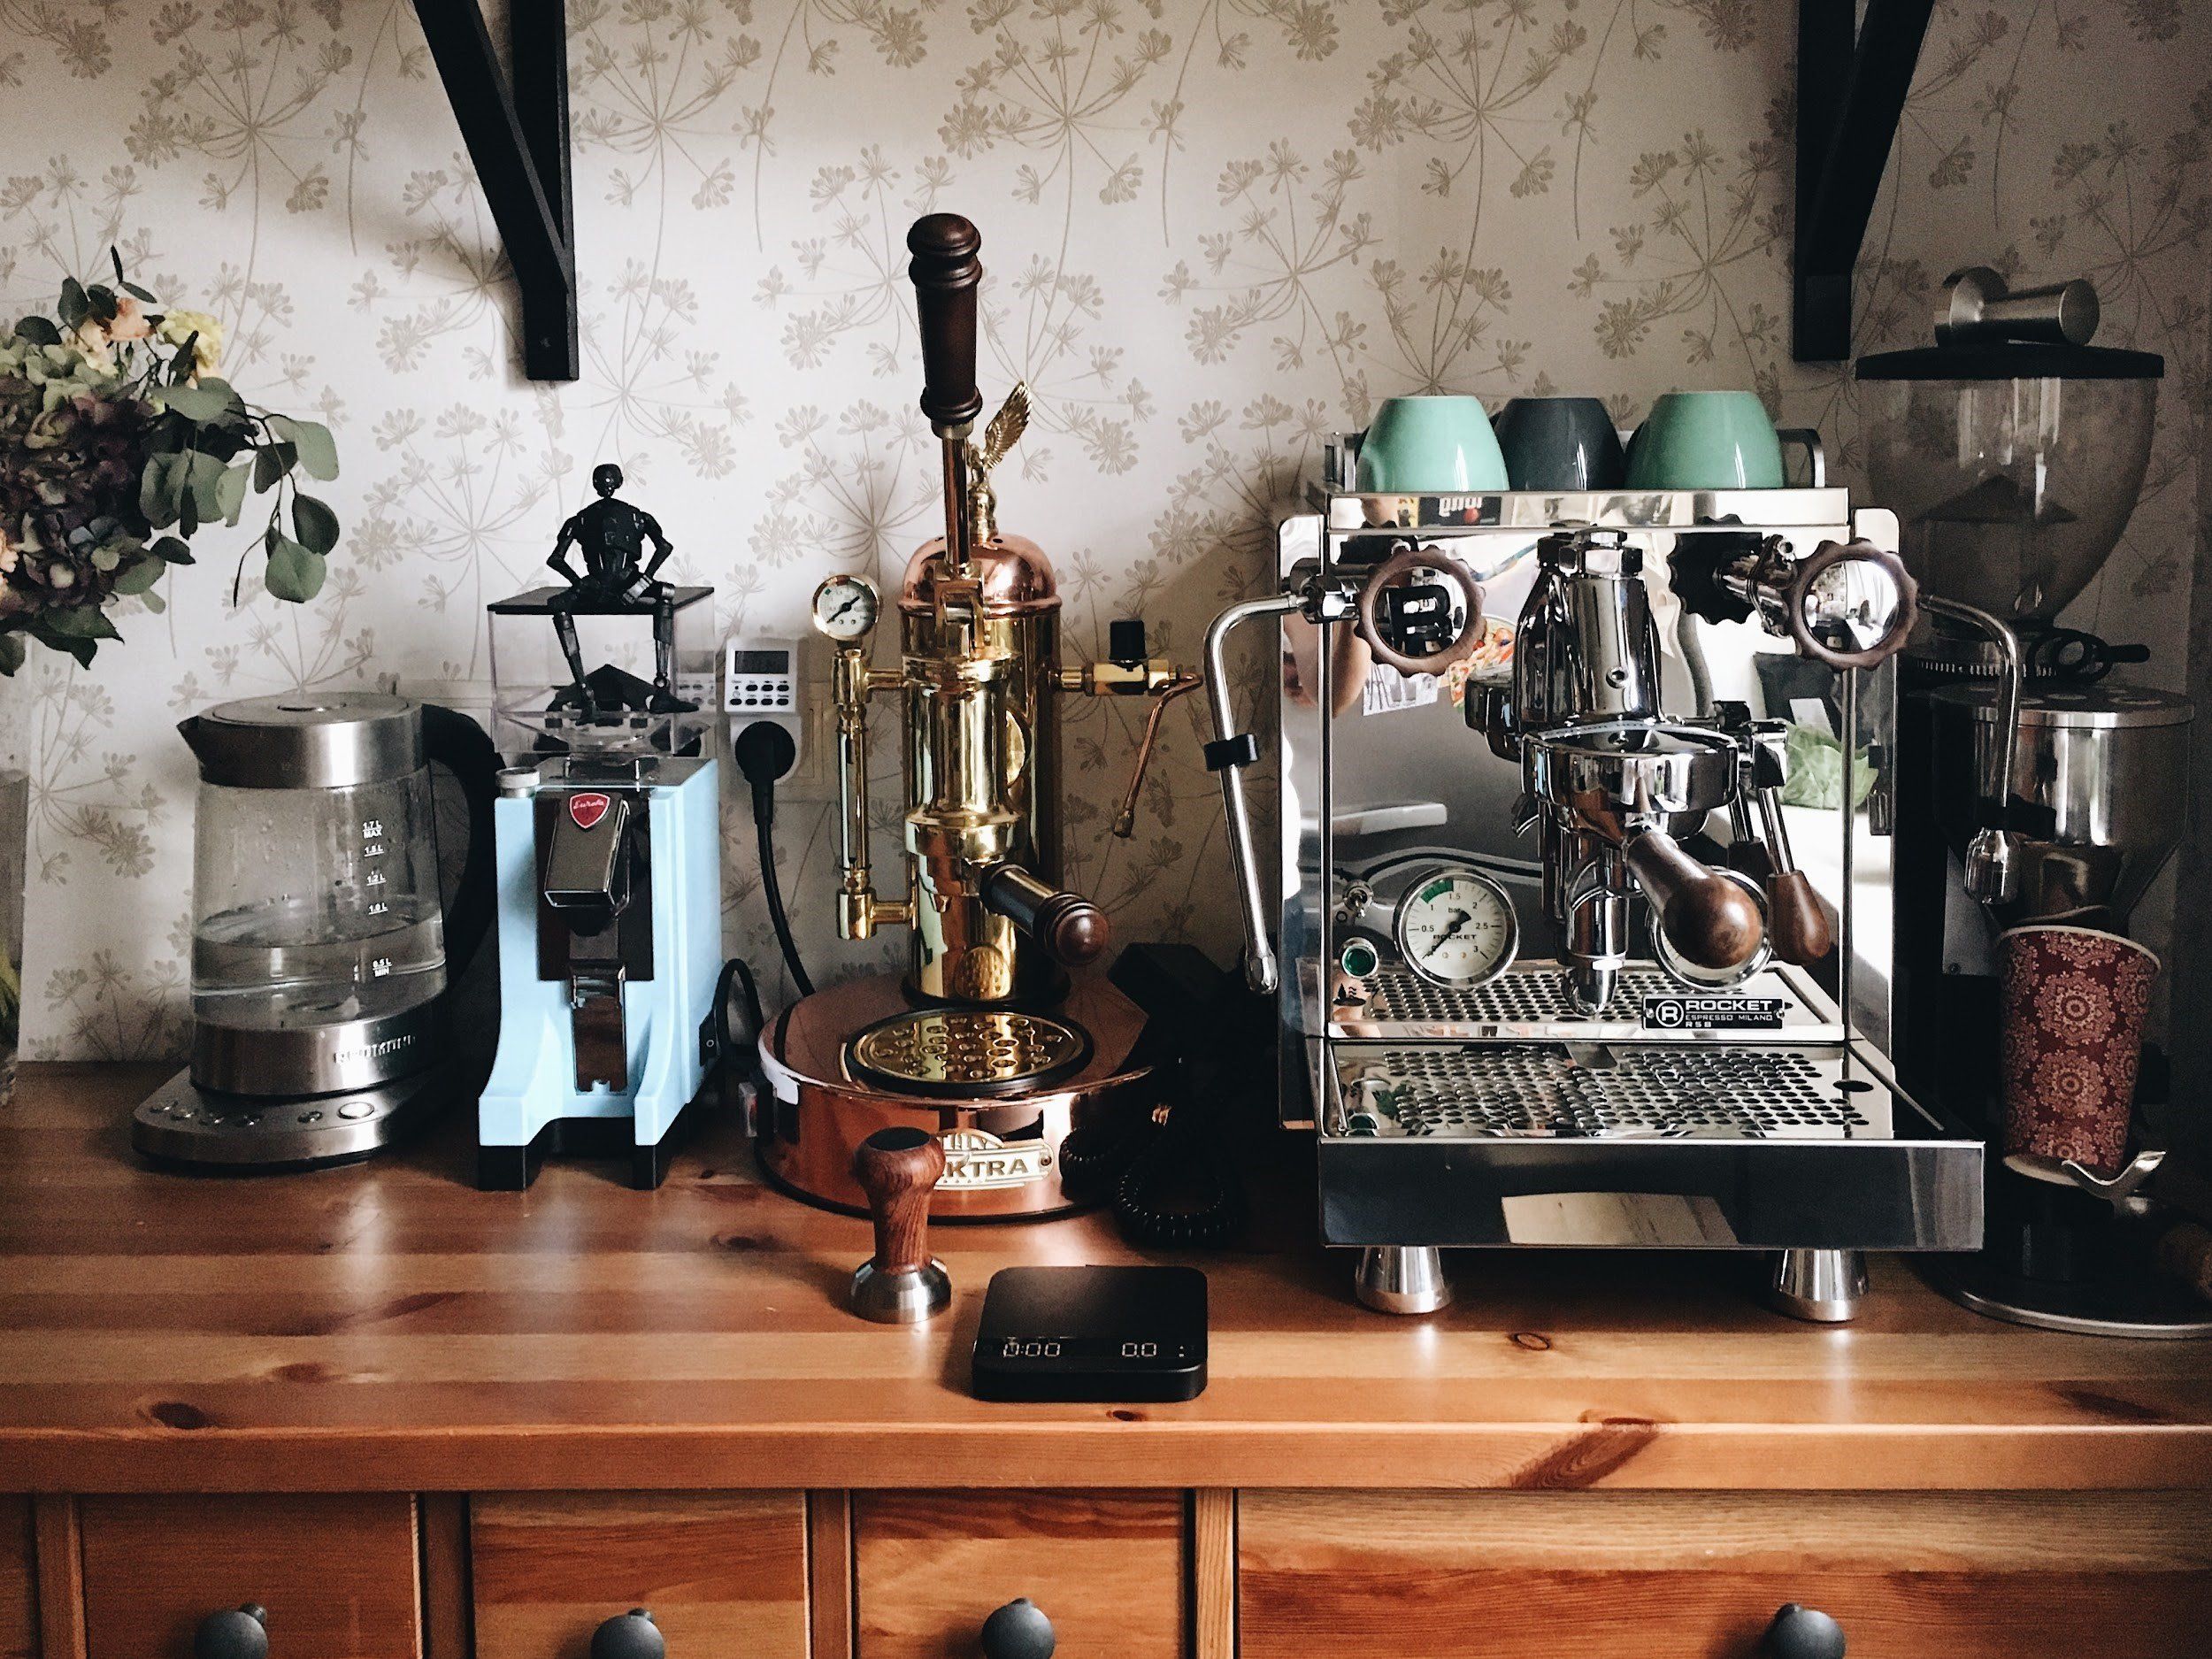 How To Build A Prosumer Home Espresso Setup - JavaPresse Coffee